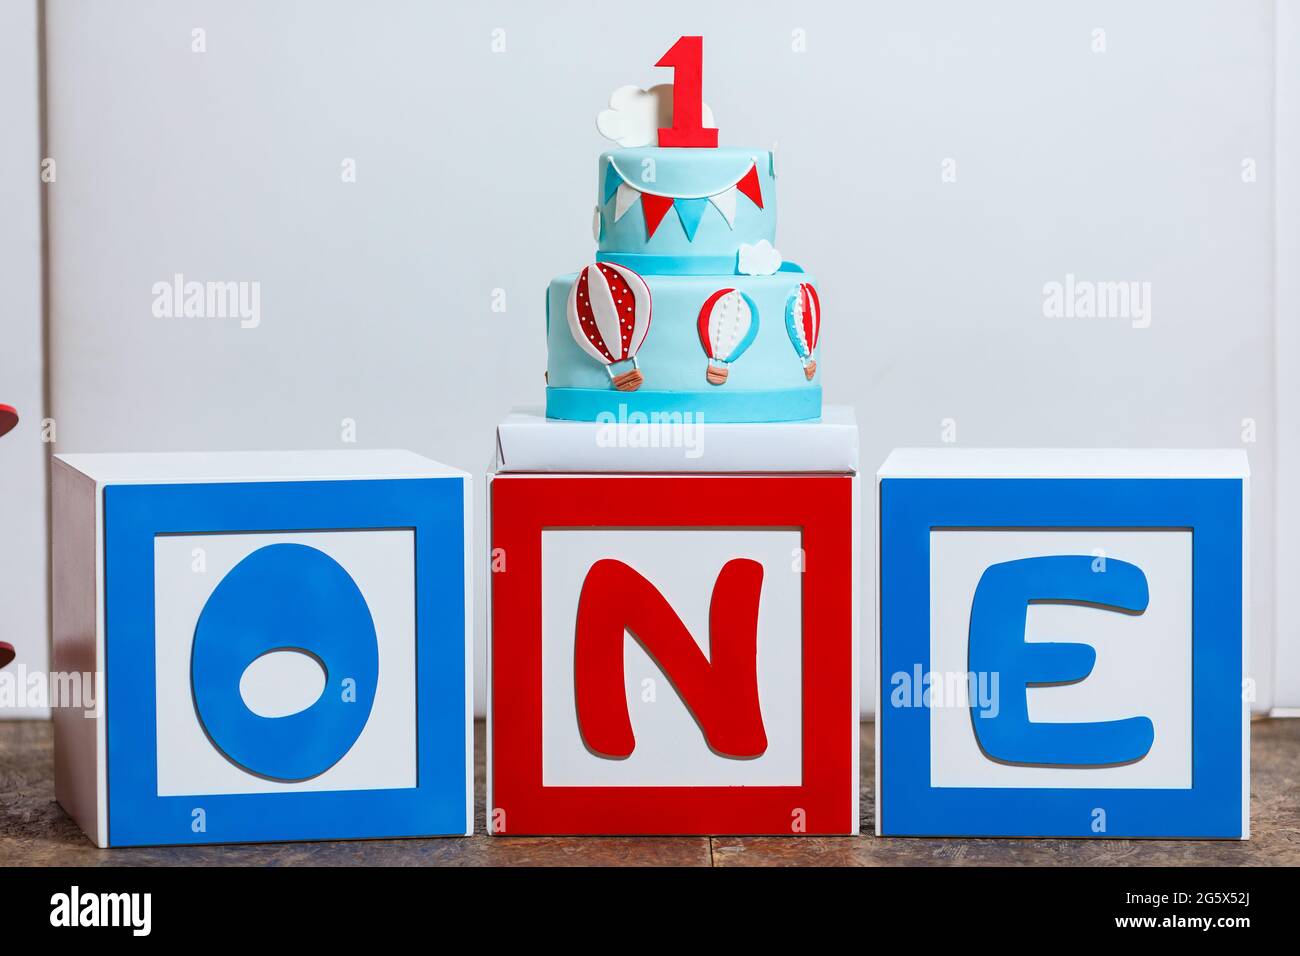 Zone photo sur la première fête d'anniversaire de garçon avec des avions et un grand gâteau. Décoration dans des tons de bleu, rouge et blanc, ballons ou thème de l'aviation, intérieur Banque D'Images